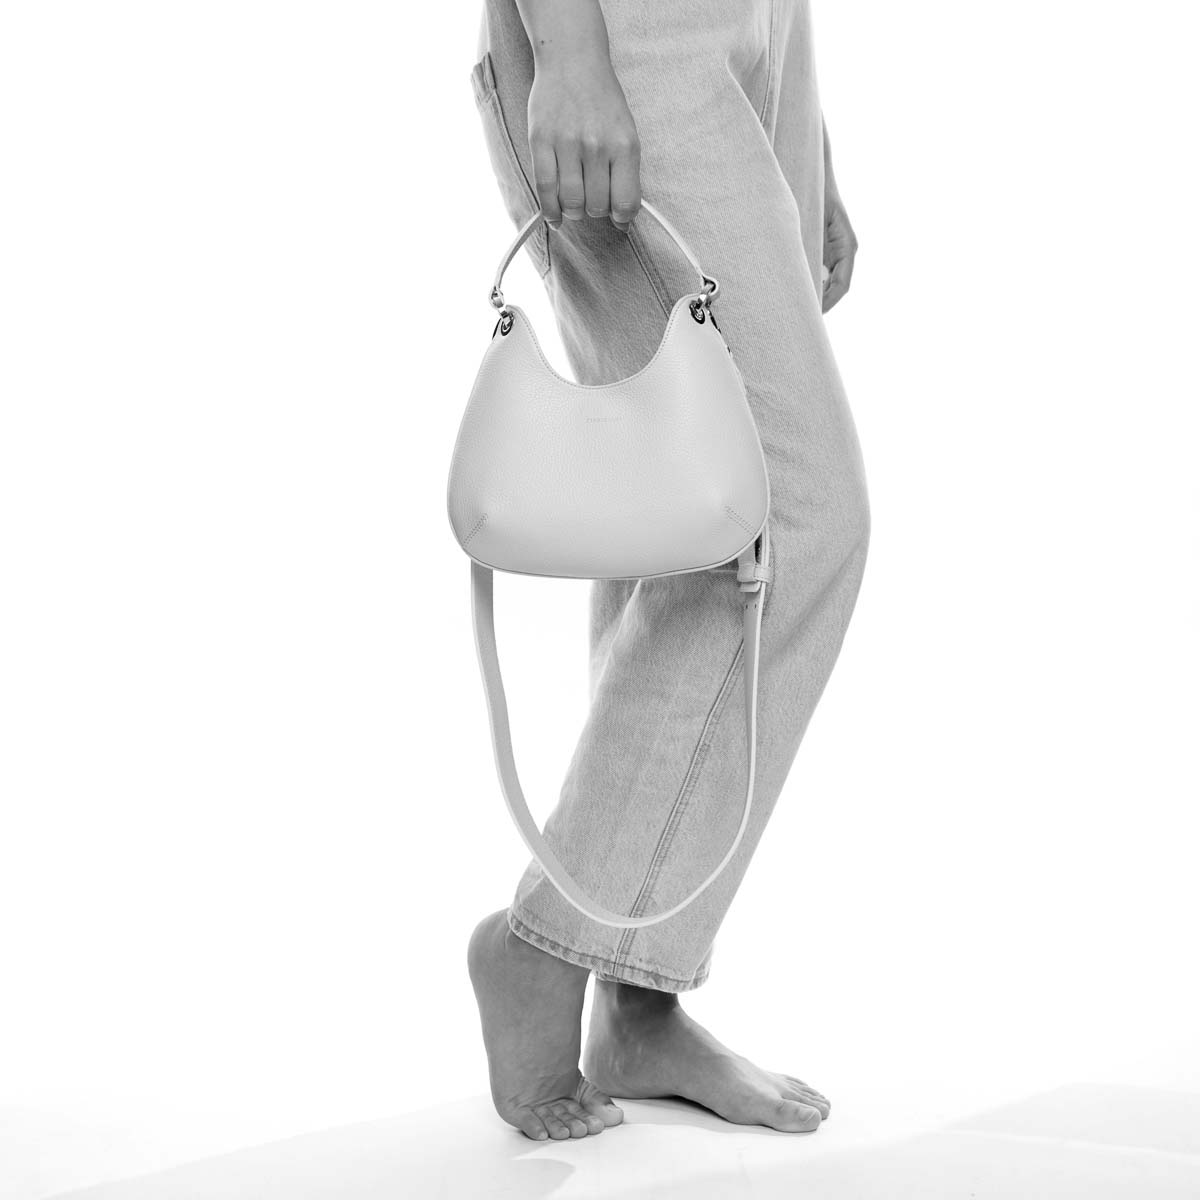 Mini Lou - borsa da donna in pelle marrone scuro, modello a mano con tracolla by Pianigiani